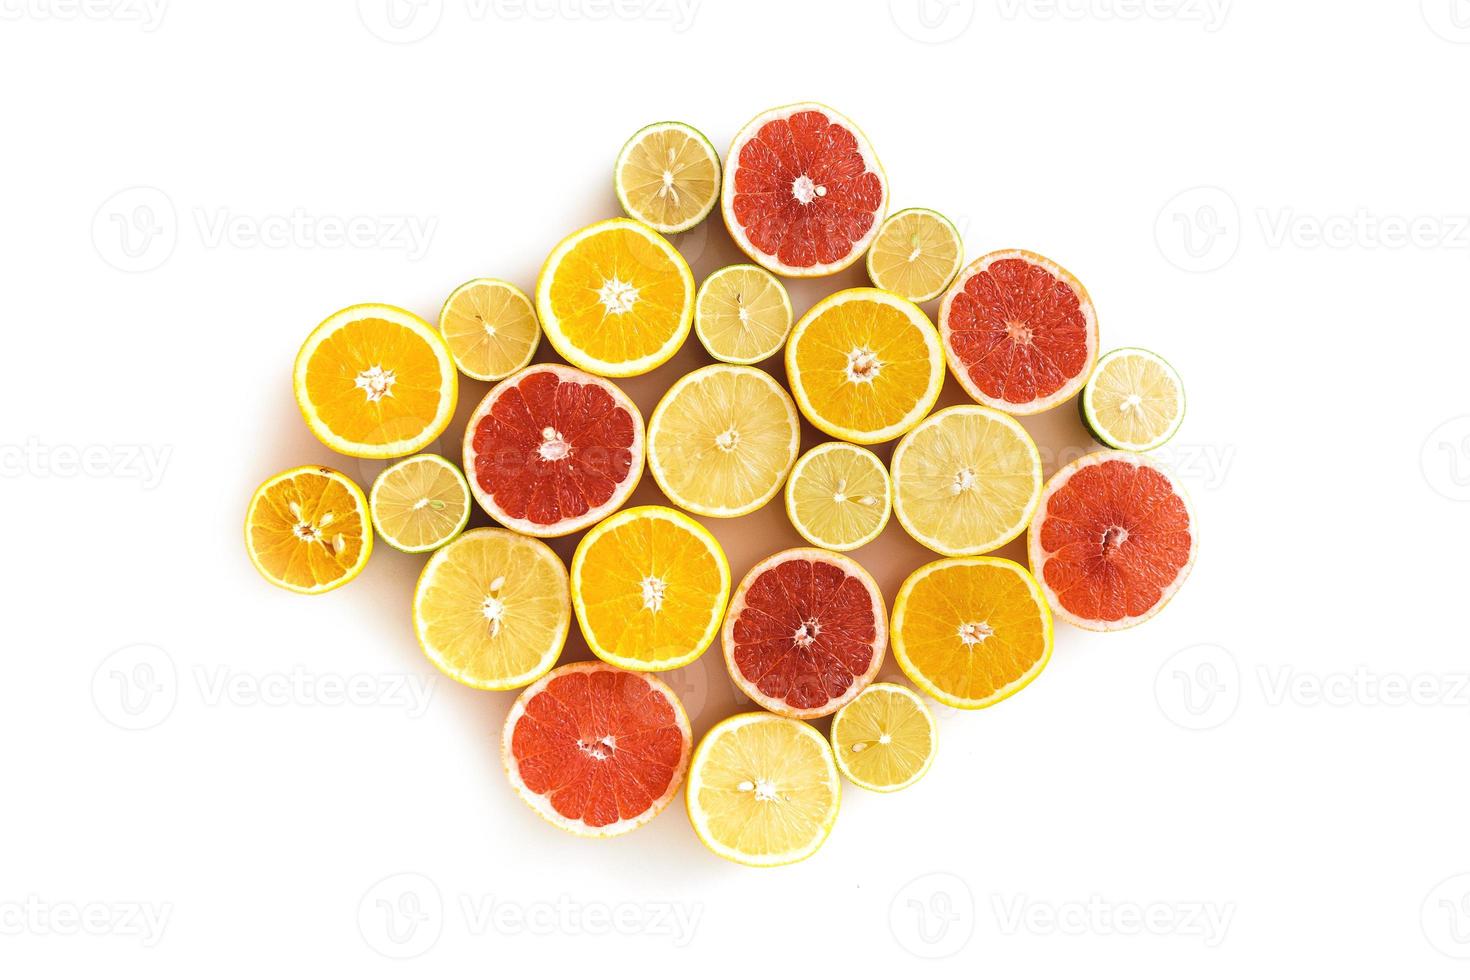 tranches d'agrumes telles que pamplemousse, orange, citron et citron vert sur fond blanc photo